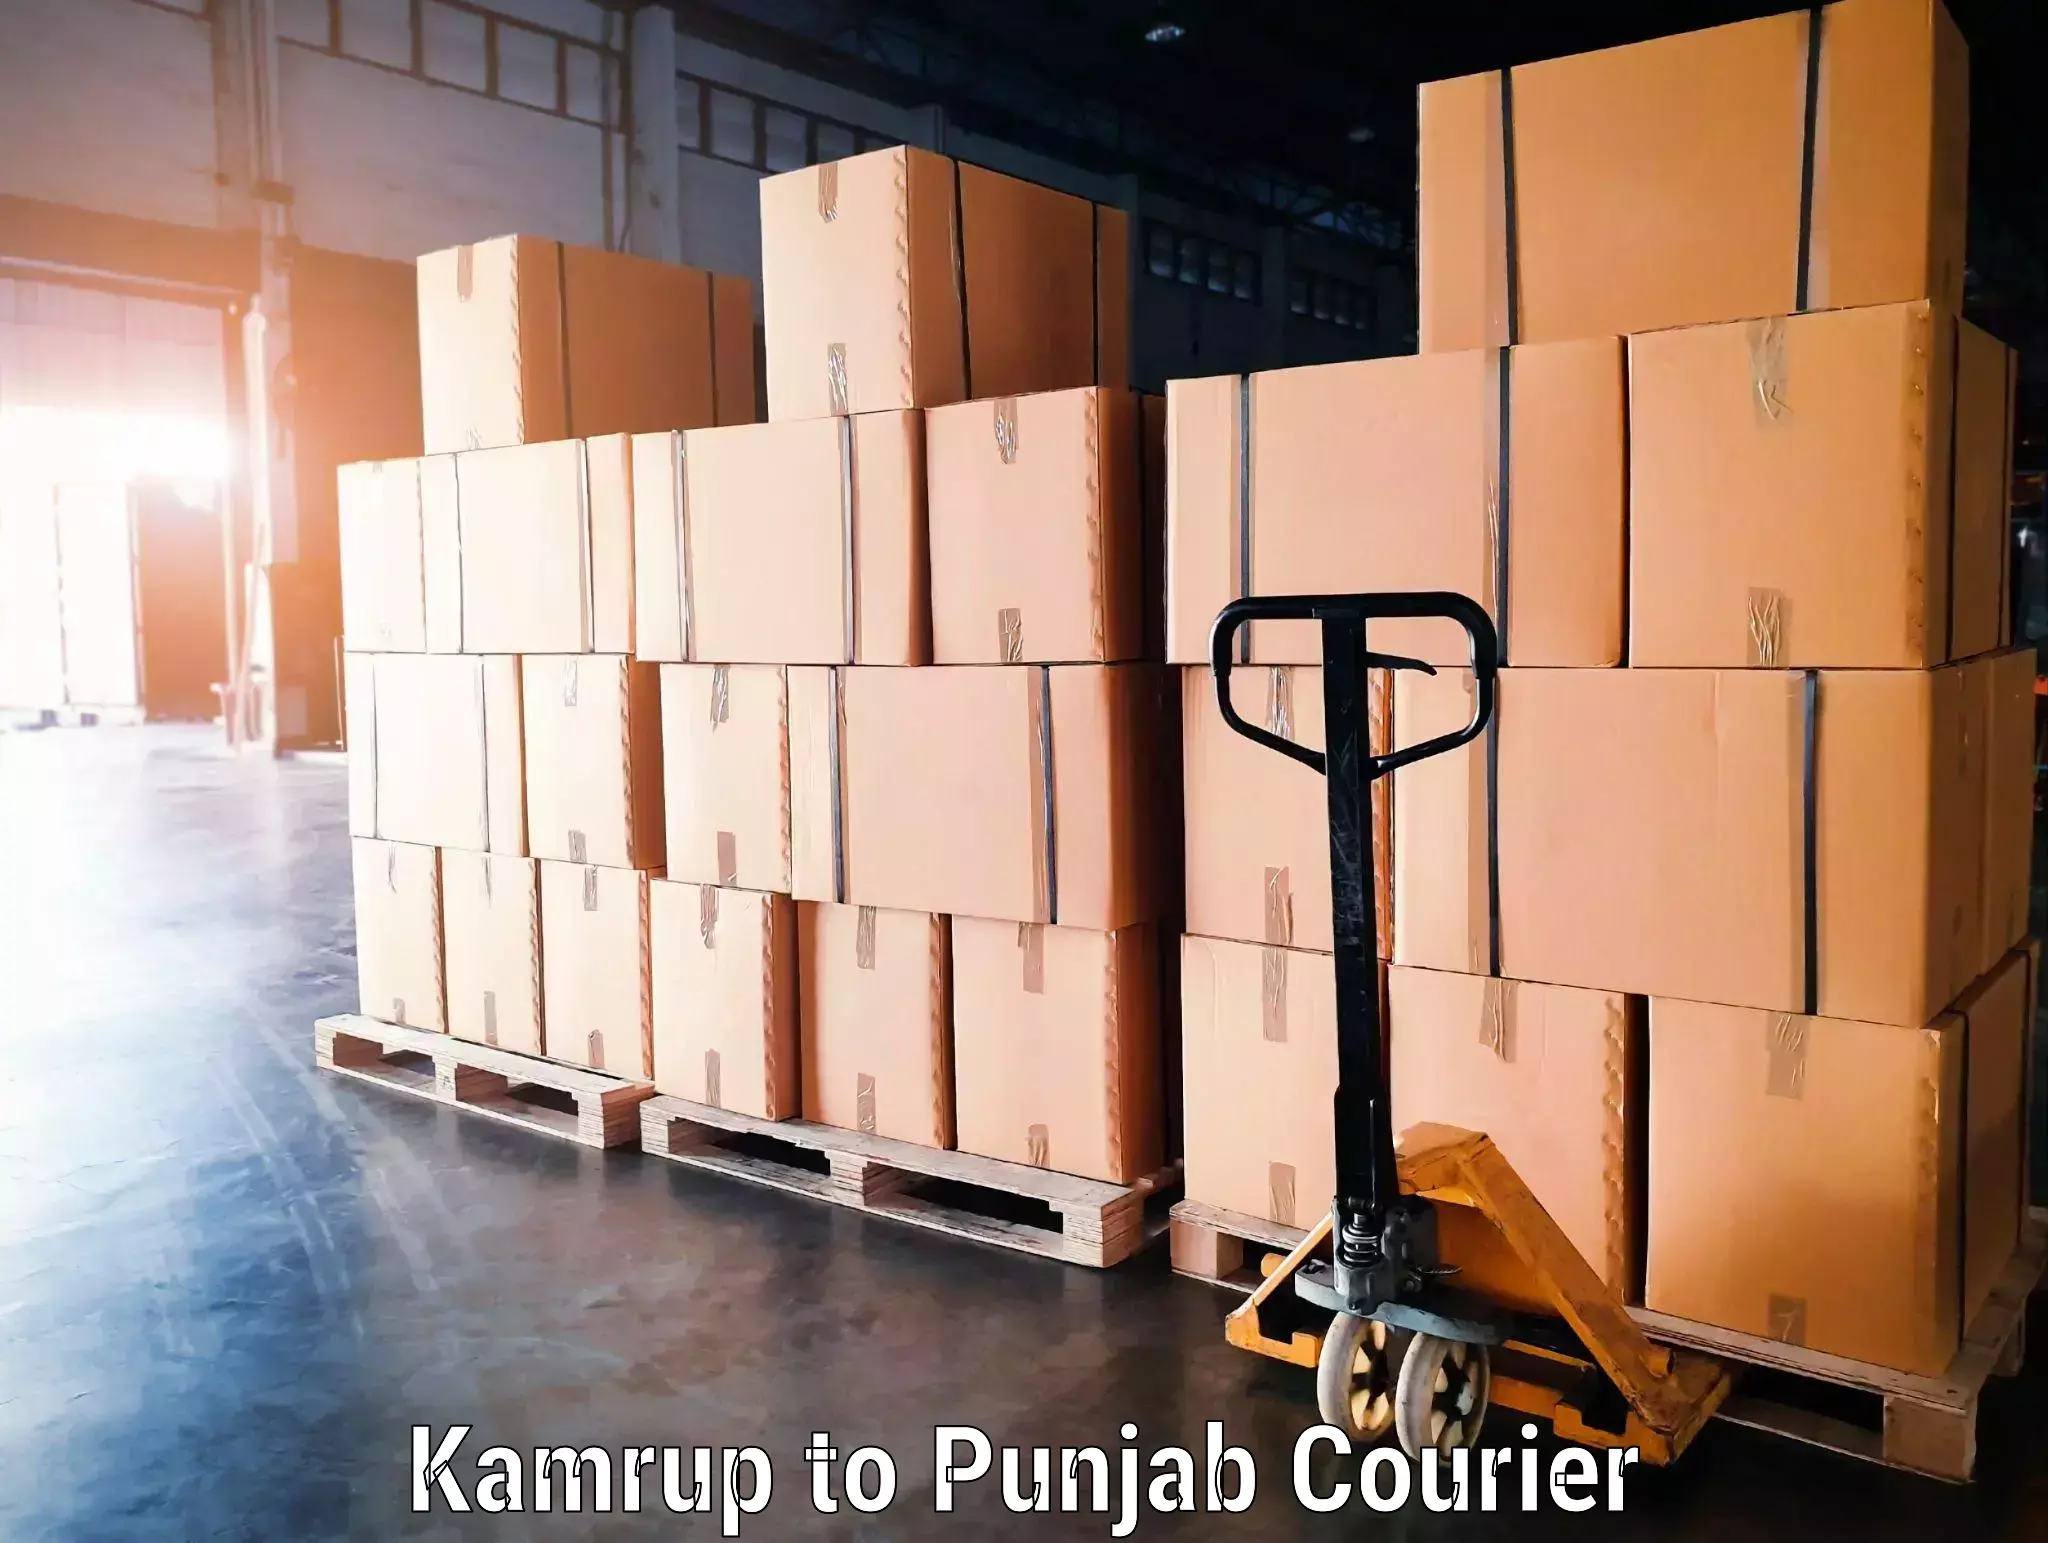 Baggage transport technology Kamrup to Punjab